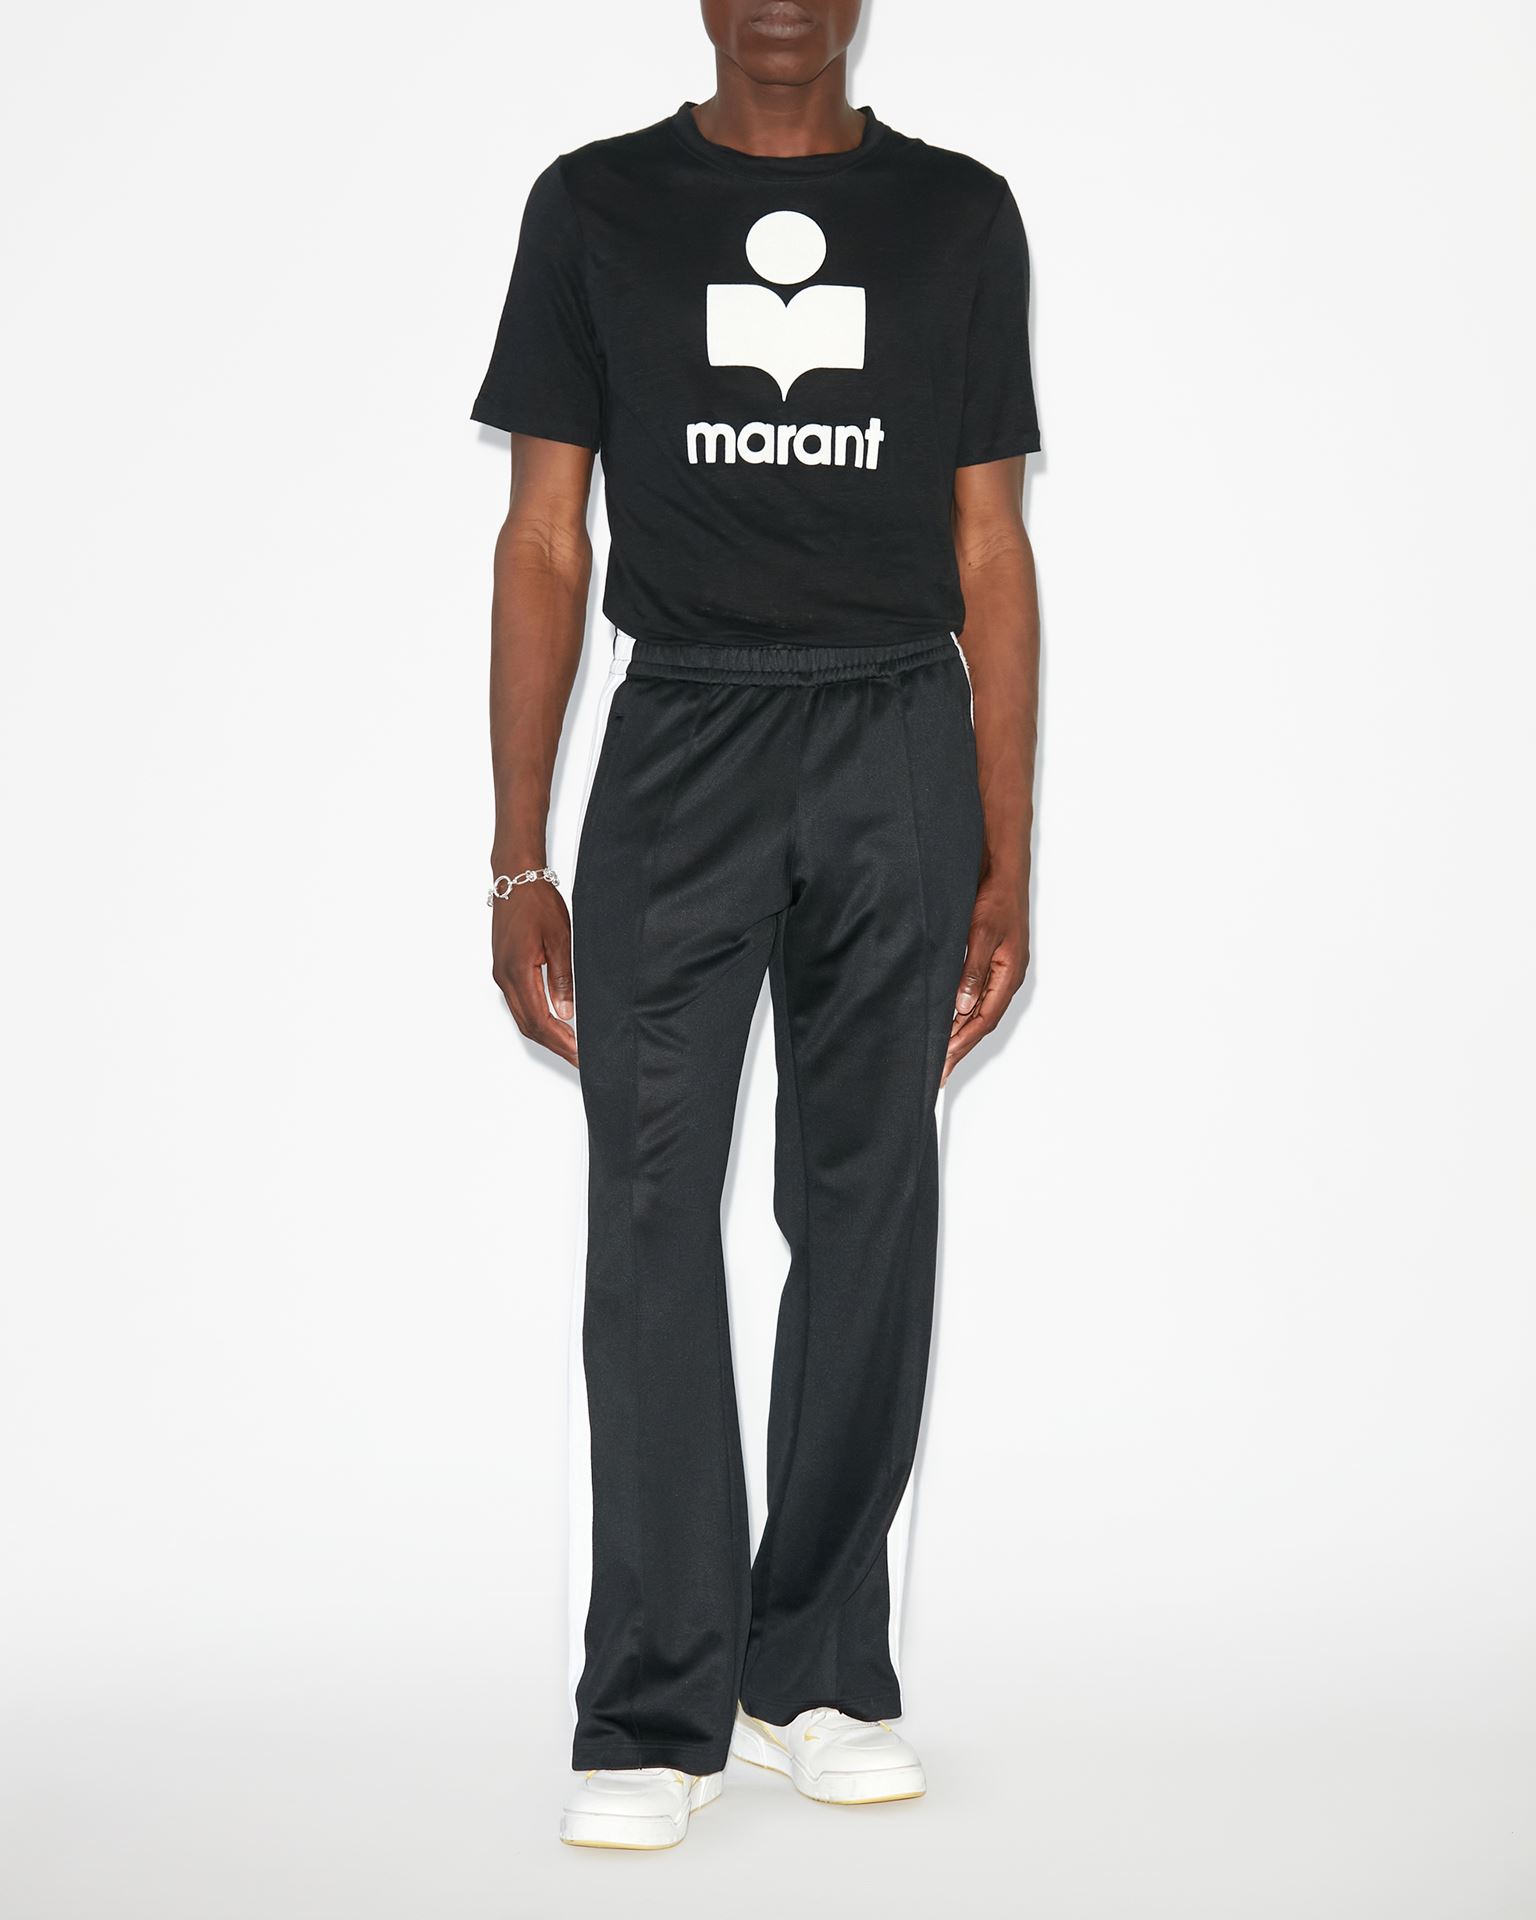 Isabel Marant, Tee-shirt A Logo Karman - Homme - Noir